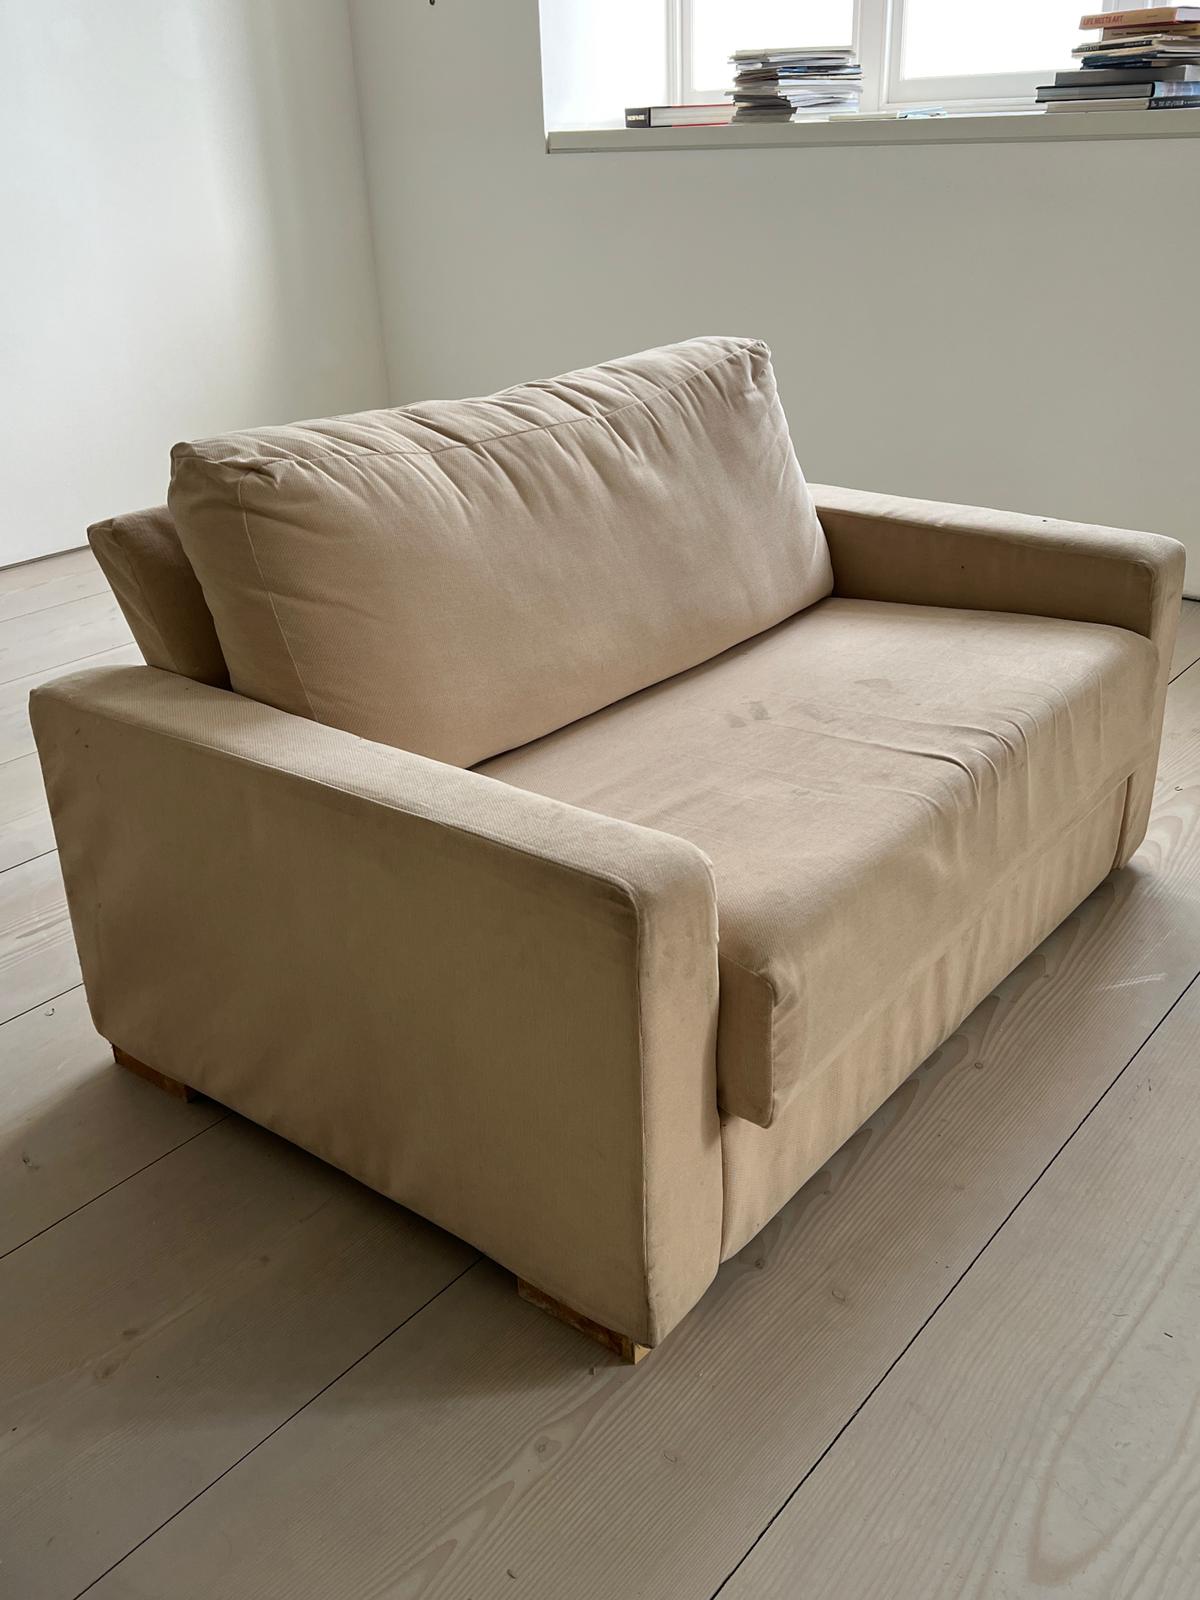 Sofa modular cuddle seat (W140cm D96cm SH57cm) - Image 2 of 6